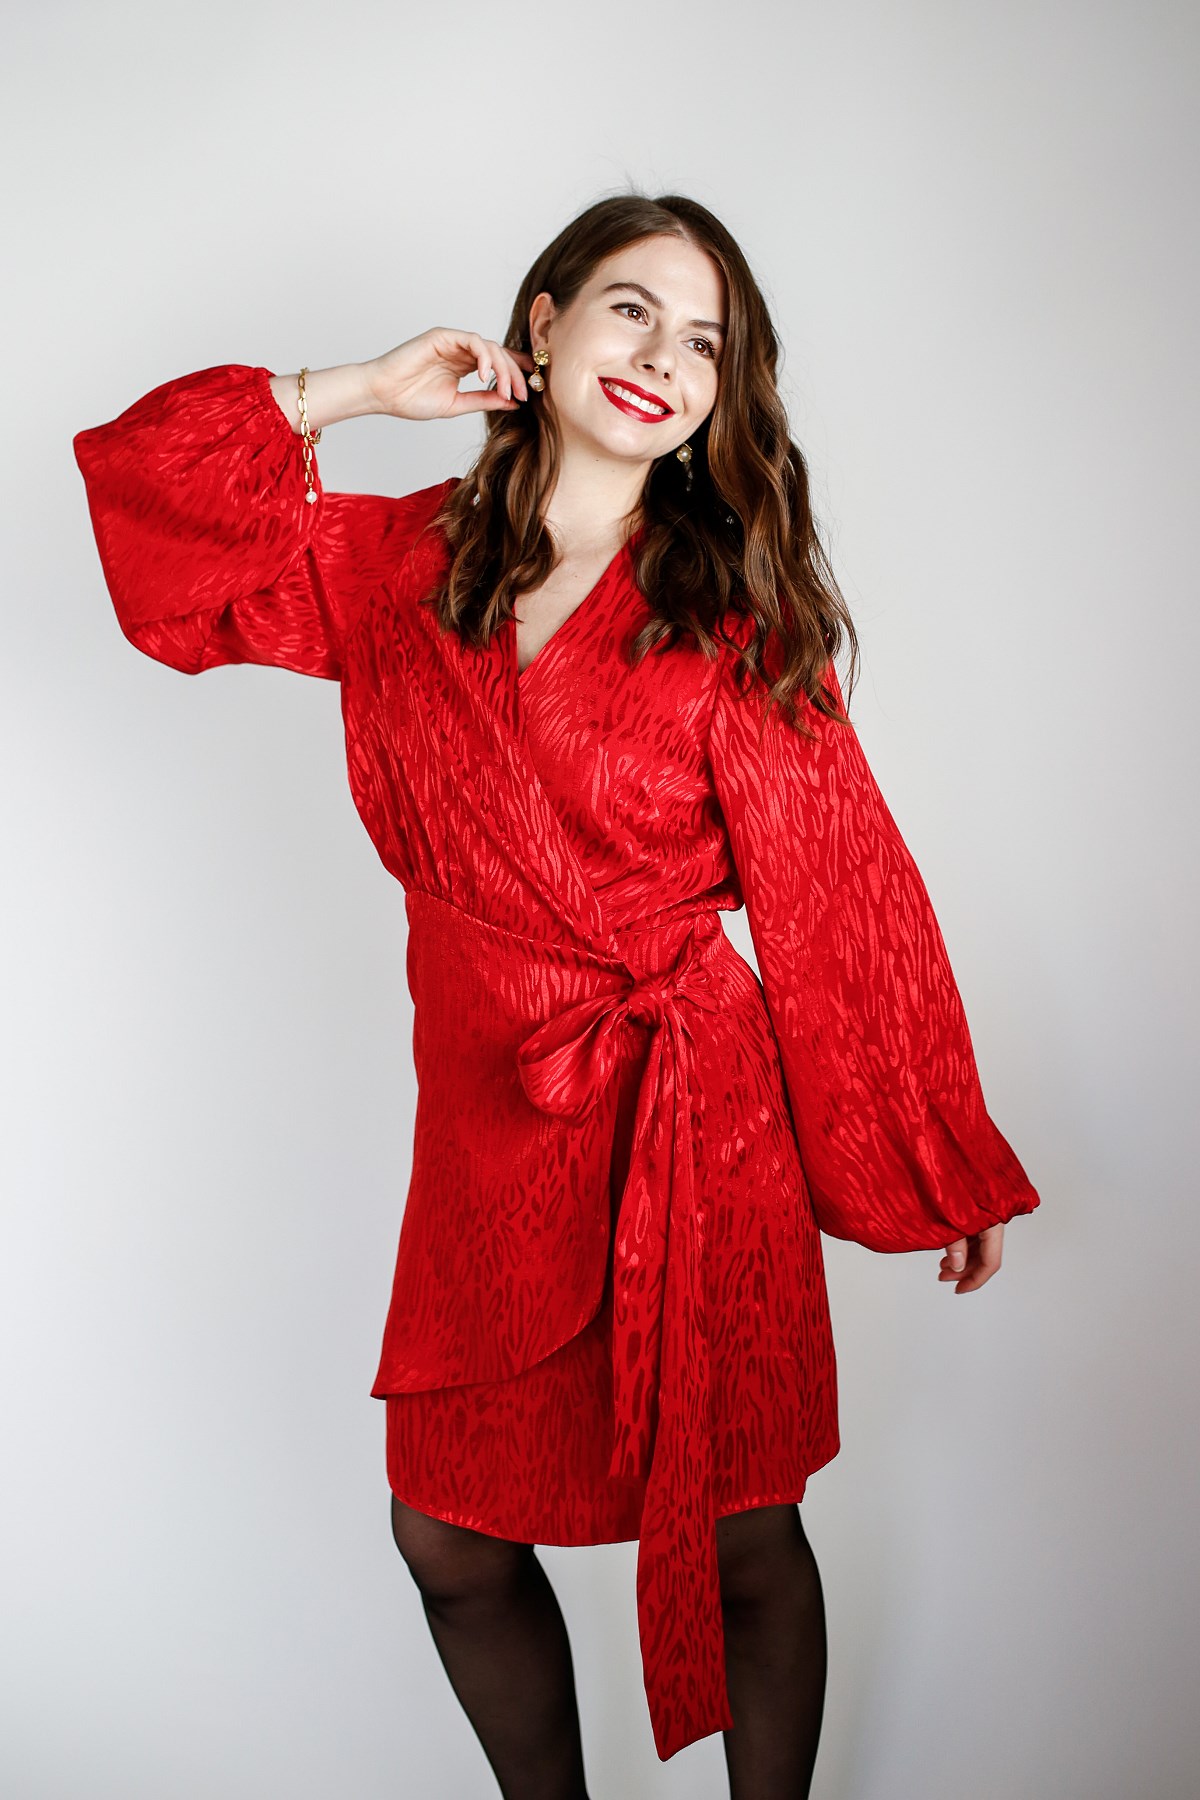 czerwona sukienka prezentownik